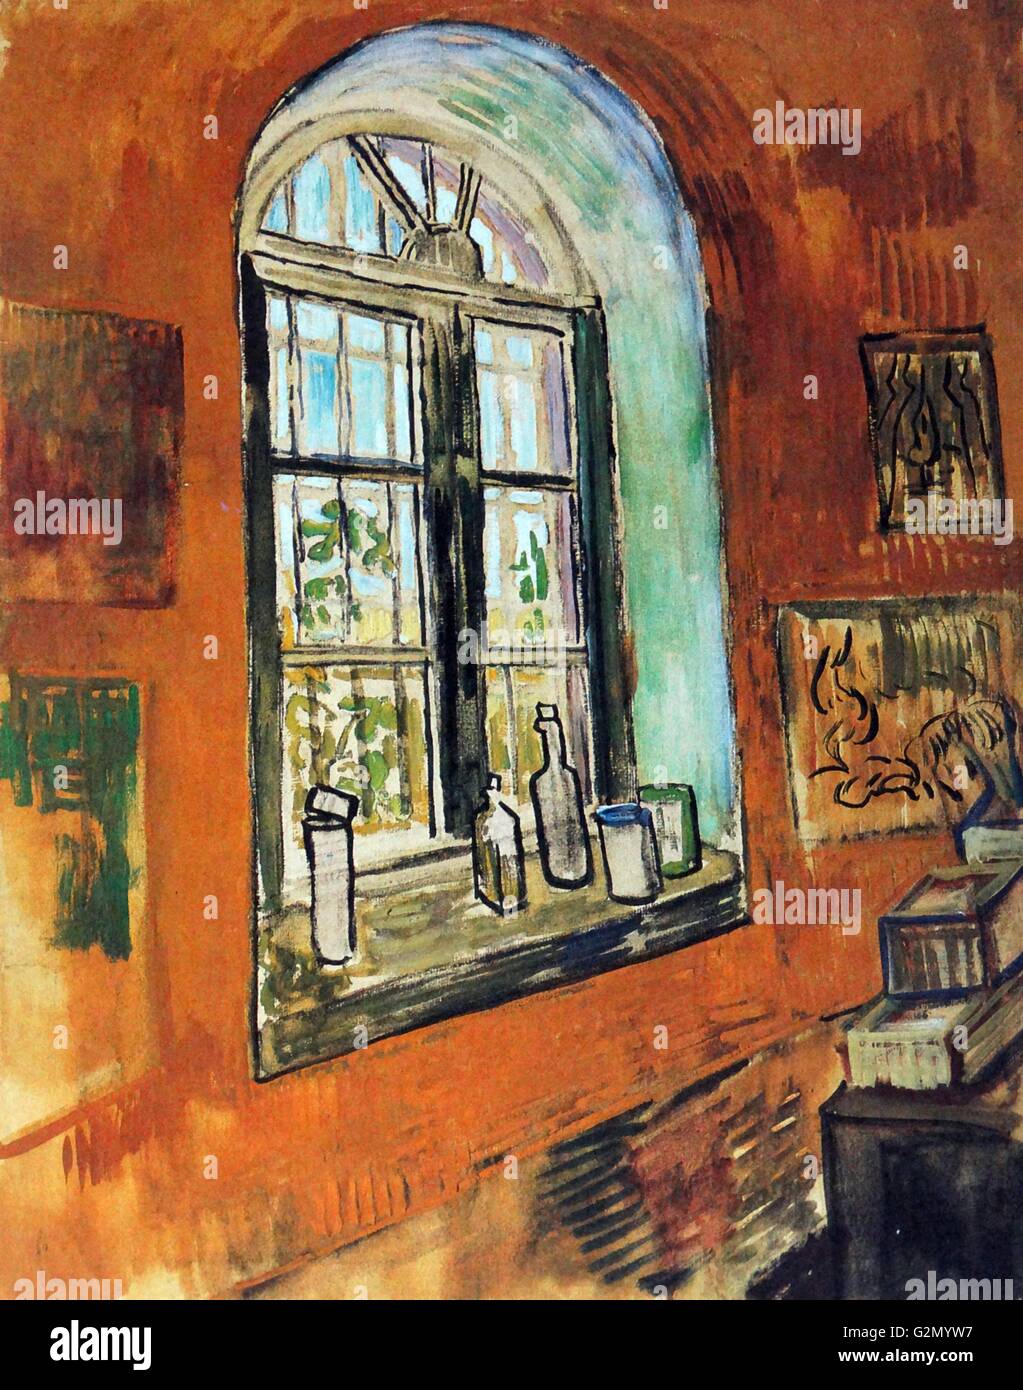 Gemälde des berühmten holländischen Malers Vincent Van Gogh (30. März 1853 - 29. Juli 1890), mit dem Titel "Fenster der Van Gogh's Studio im Asyl'. Im Jahr 1889 abgeschlossen. Stockfoto